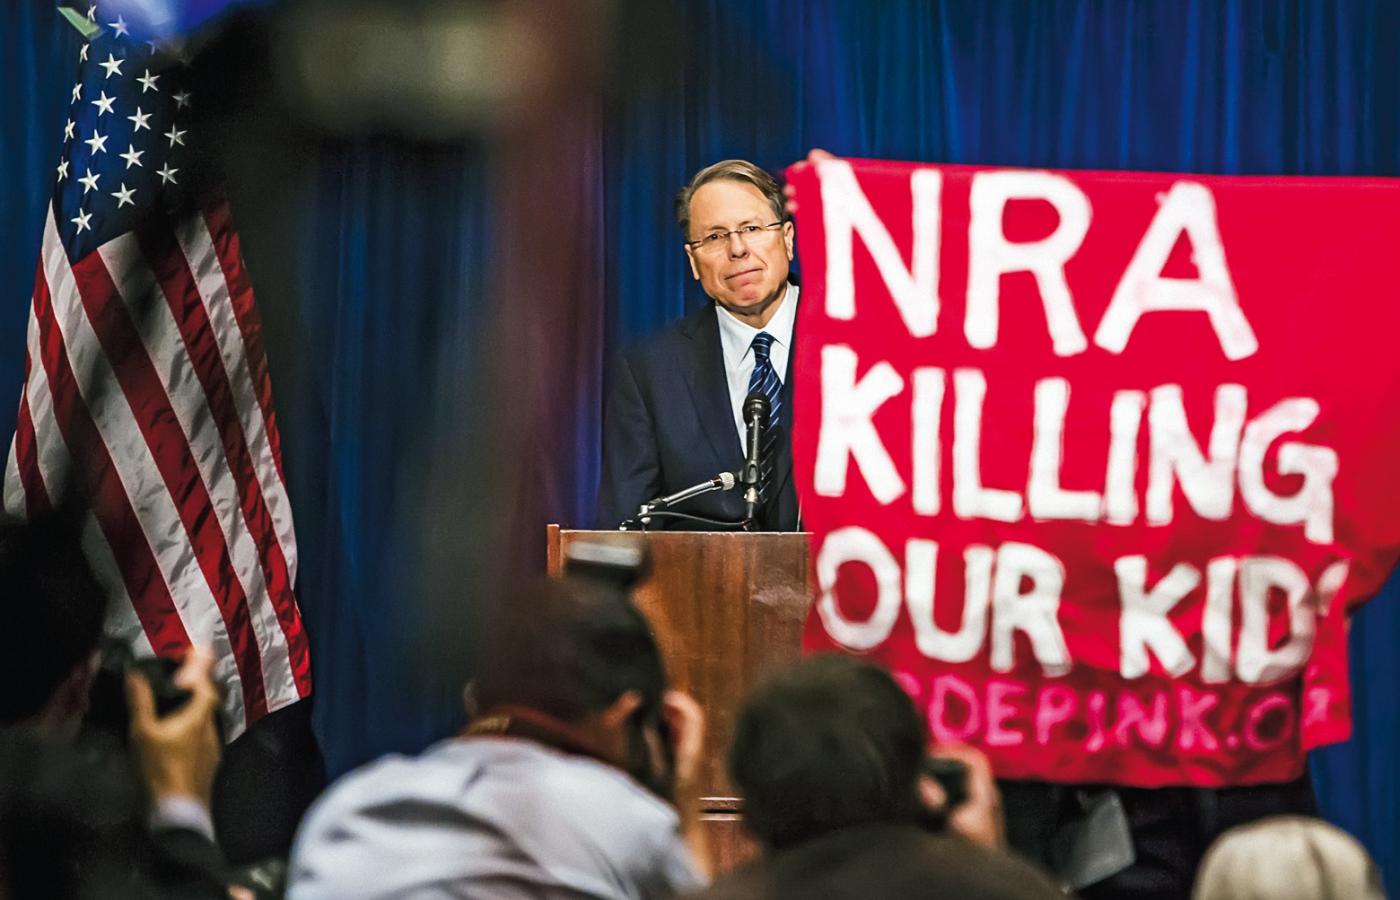 „NRA zabija nasze dzieci” - głosi hasło. Z tyłu szef NRA (Narodowego Stowarzyszenia Strzeleckiego) Wayne La Pierre.